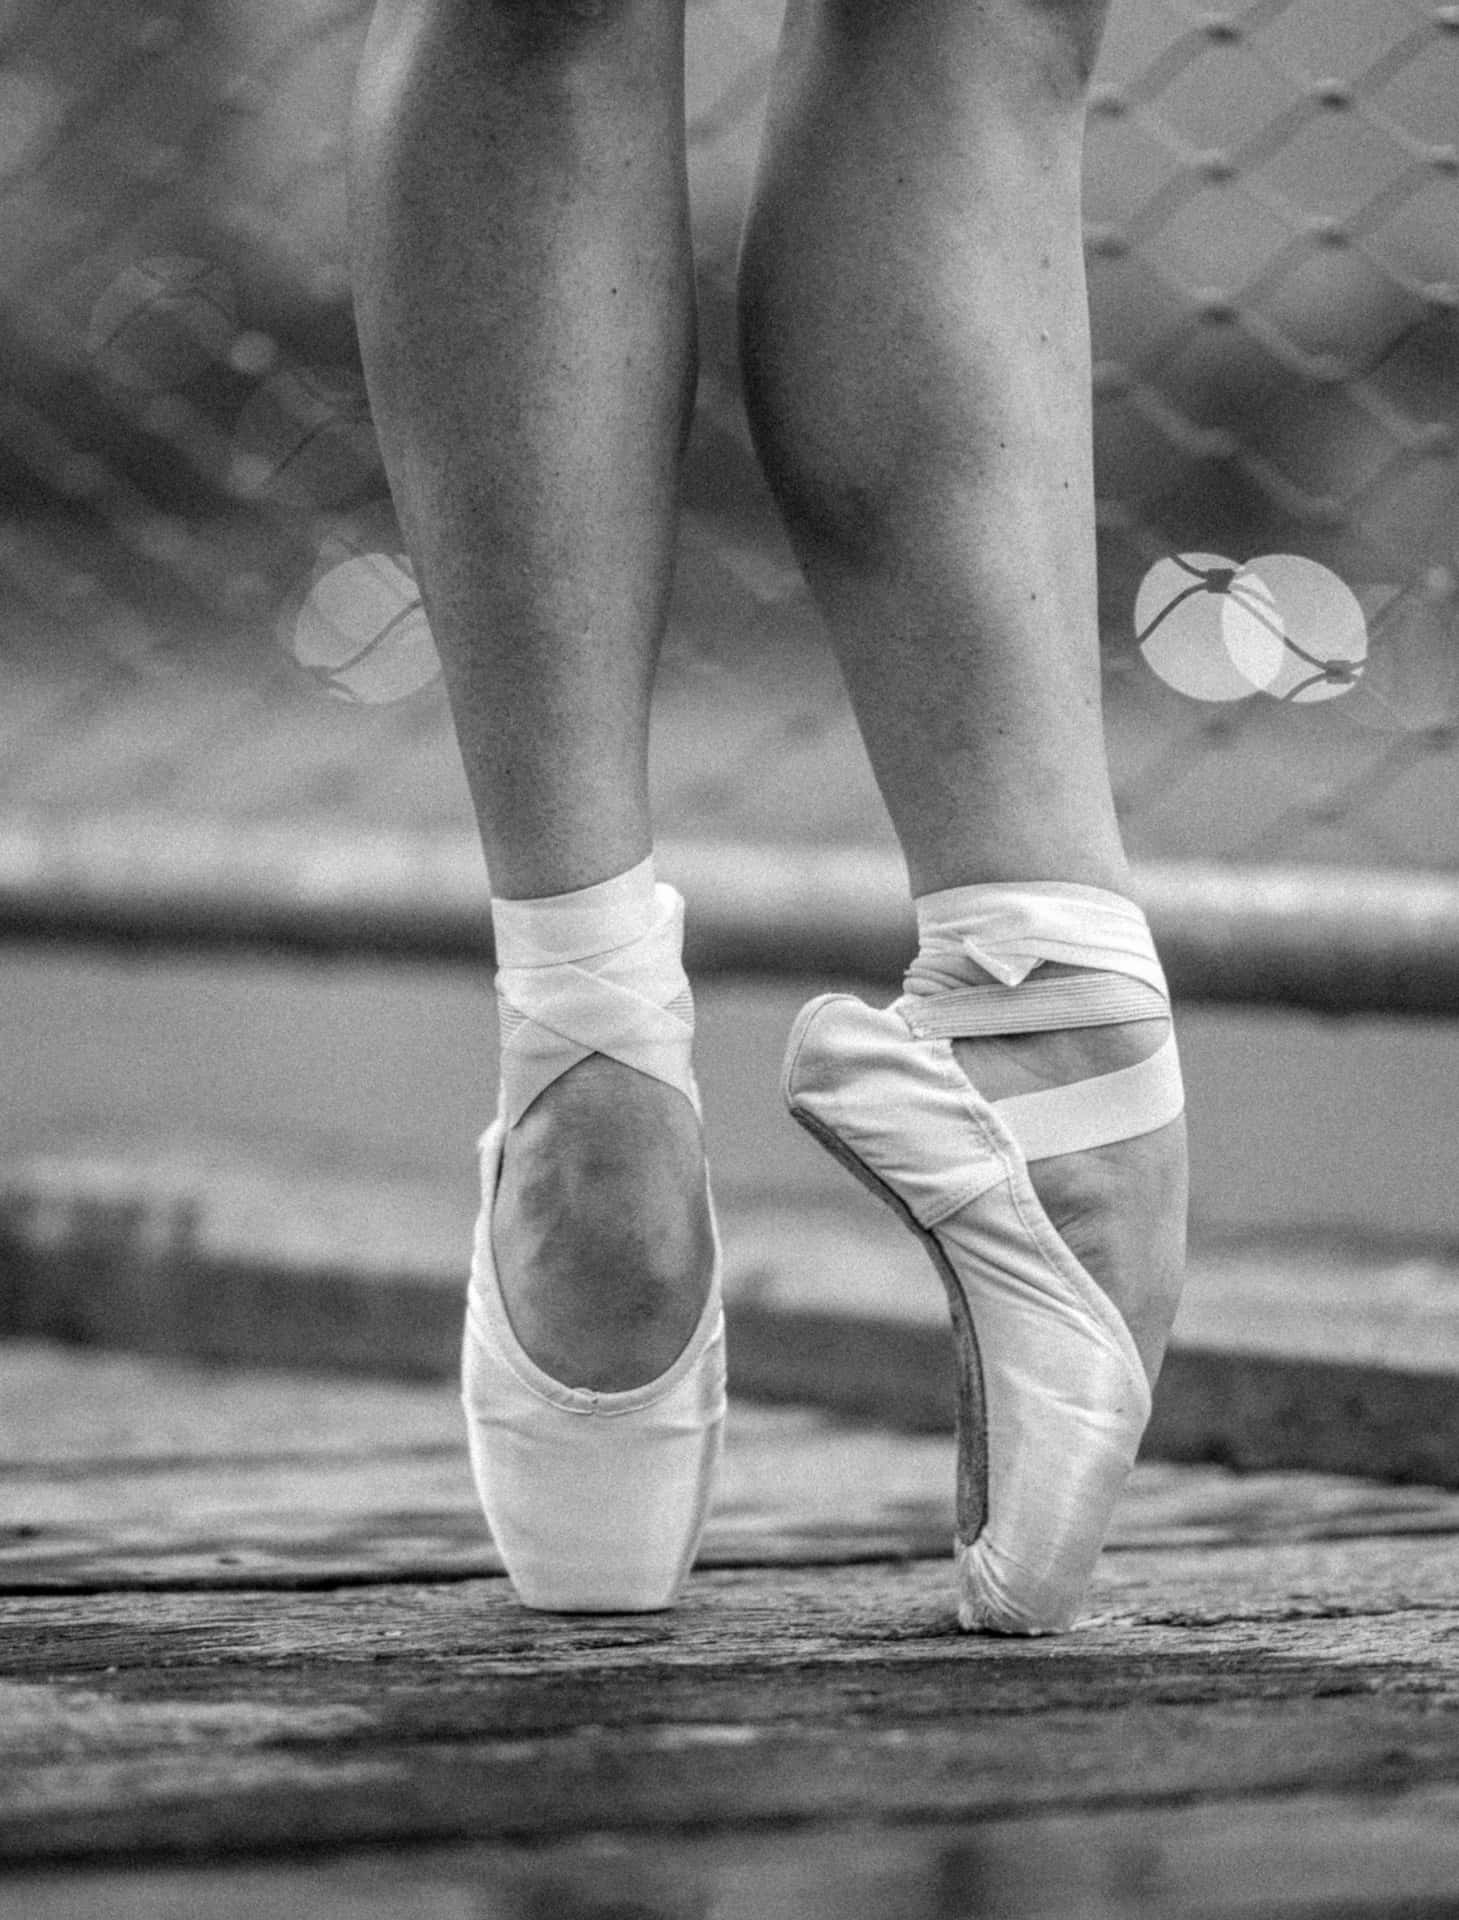 Lospies De Una Mujer En Zapatillas De Ballet En Un Muelle Fondo de pantalla